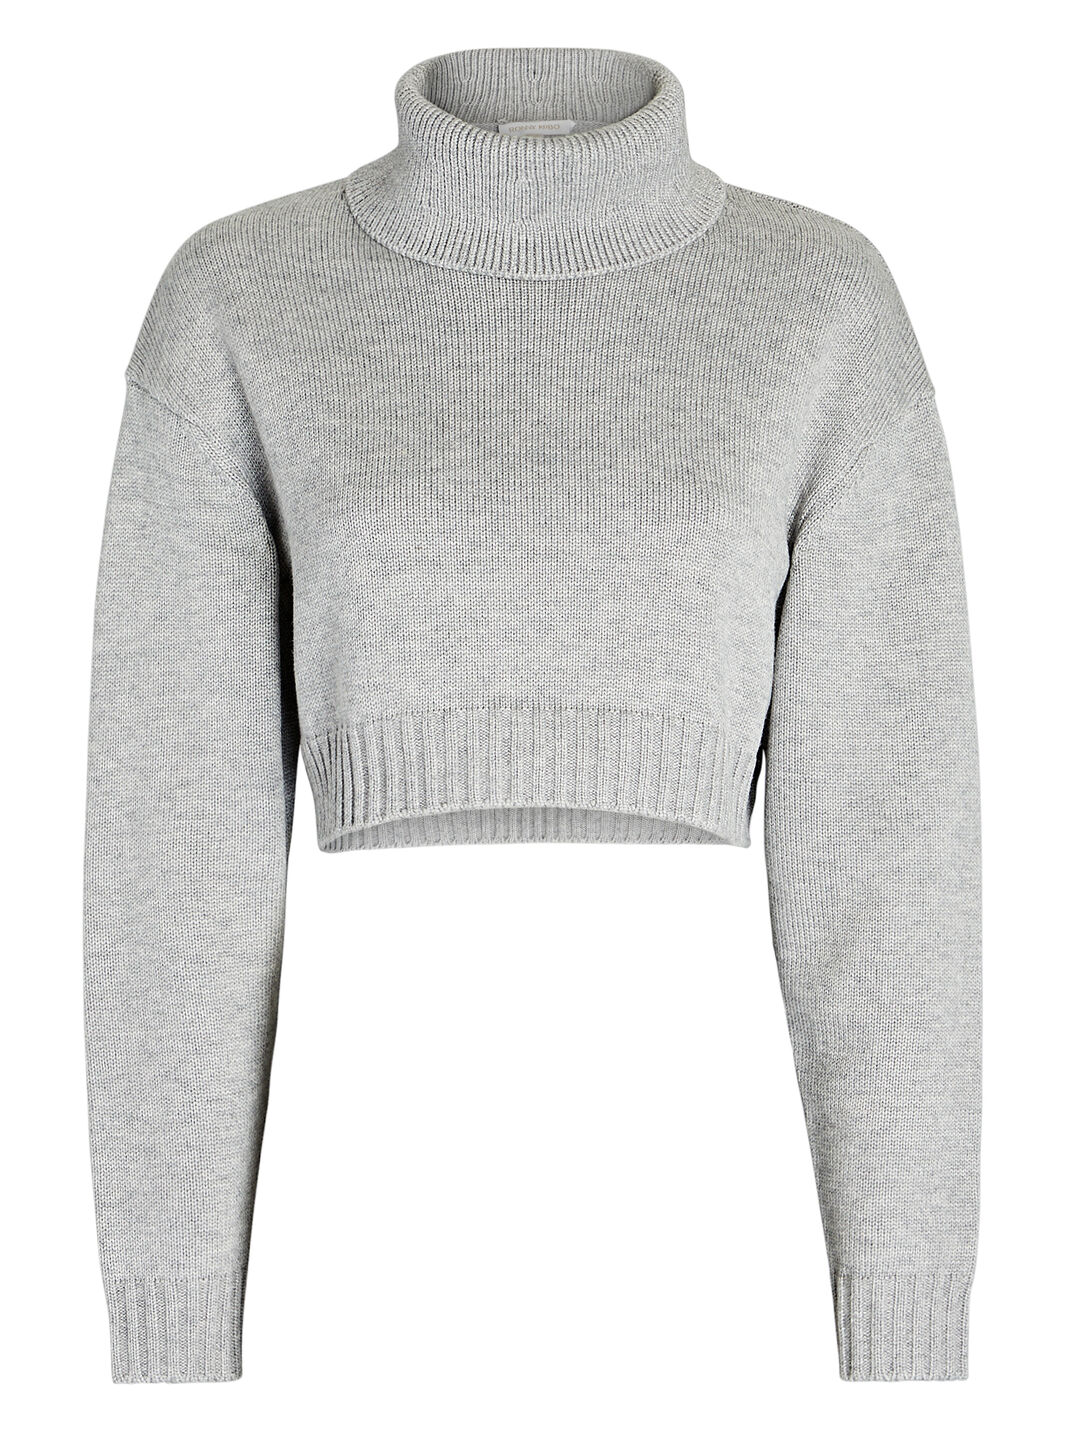 Sarki Turtleneck Cropped Sweater